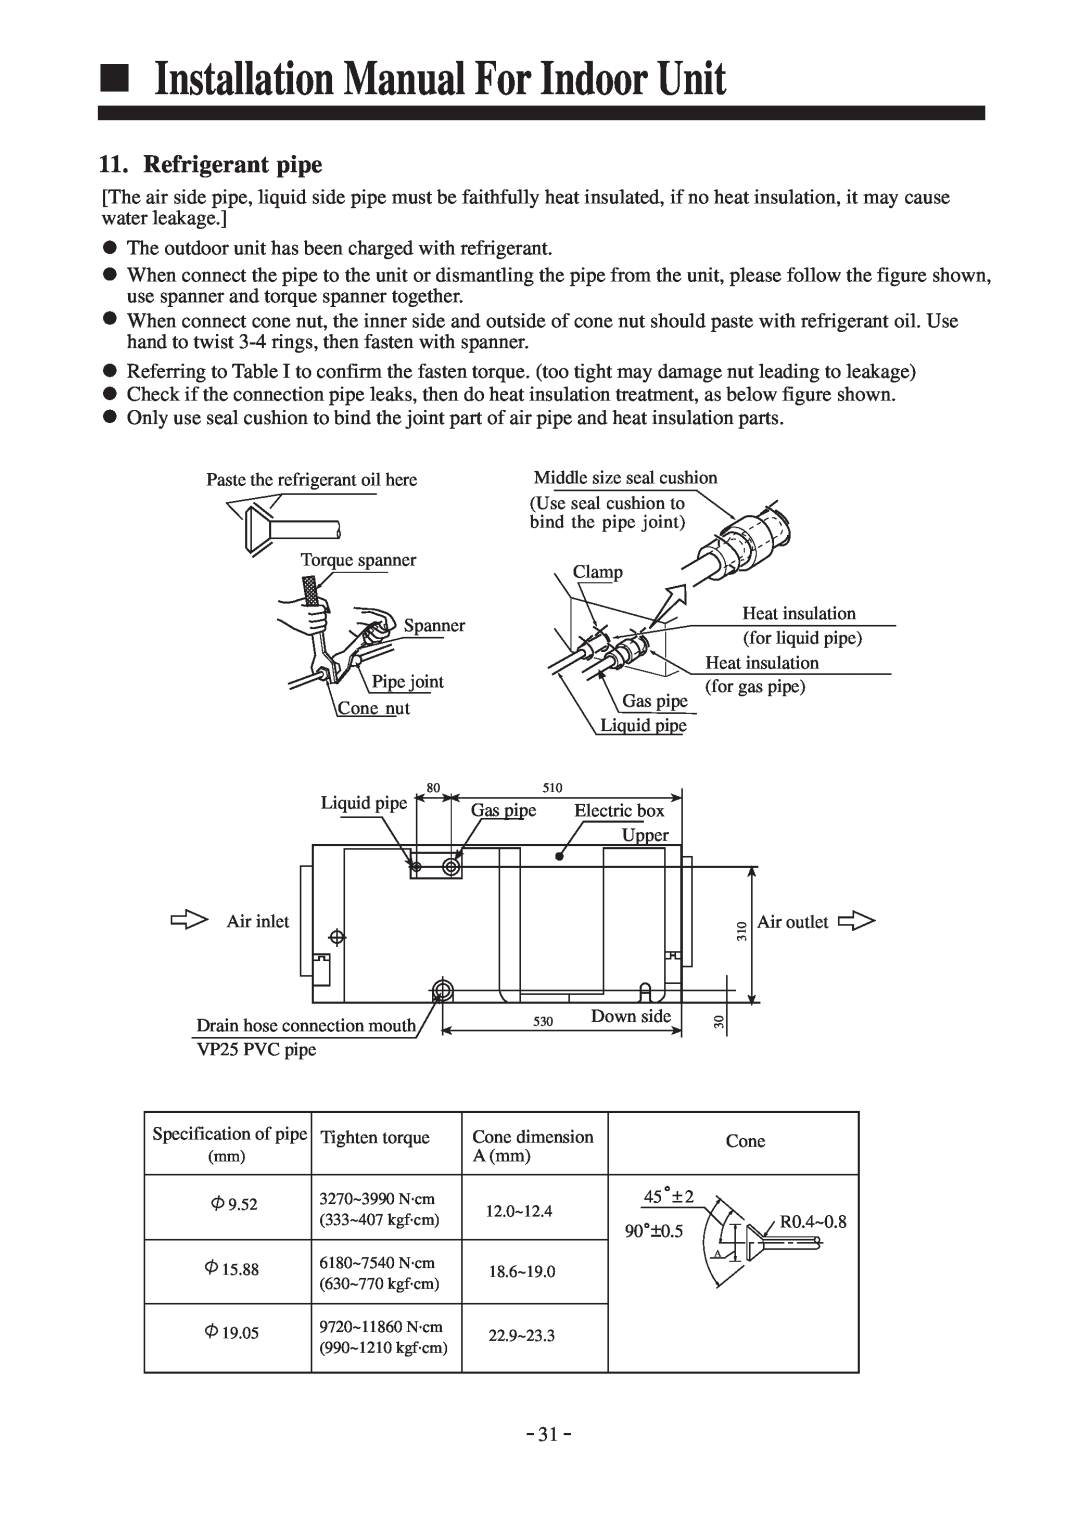 Haier HDU-42CF03/H installation manual Refrigerant pipe, Installation Manual For Indoor Unit 